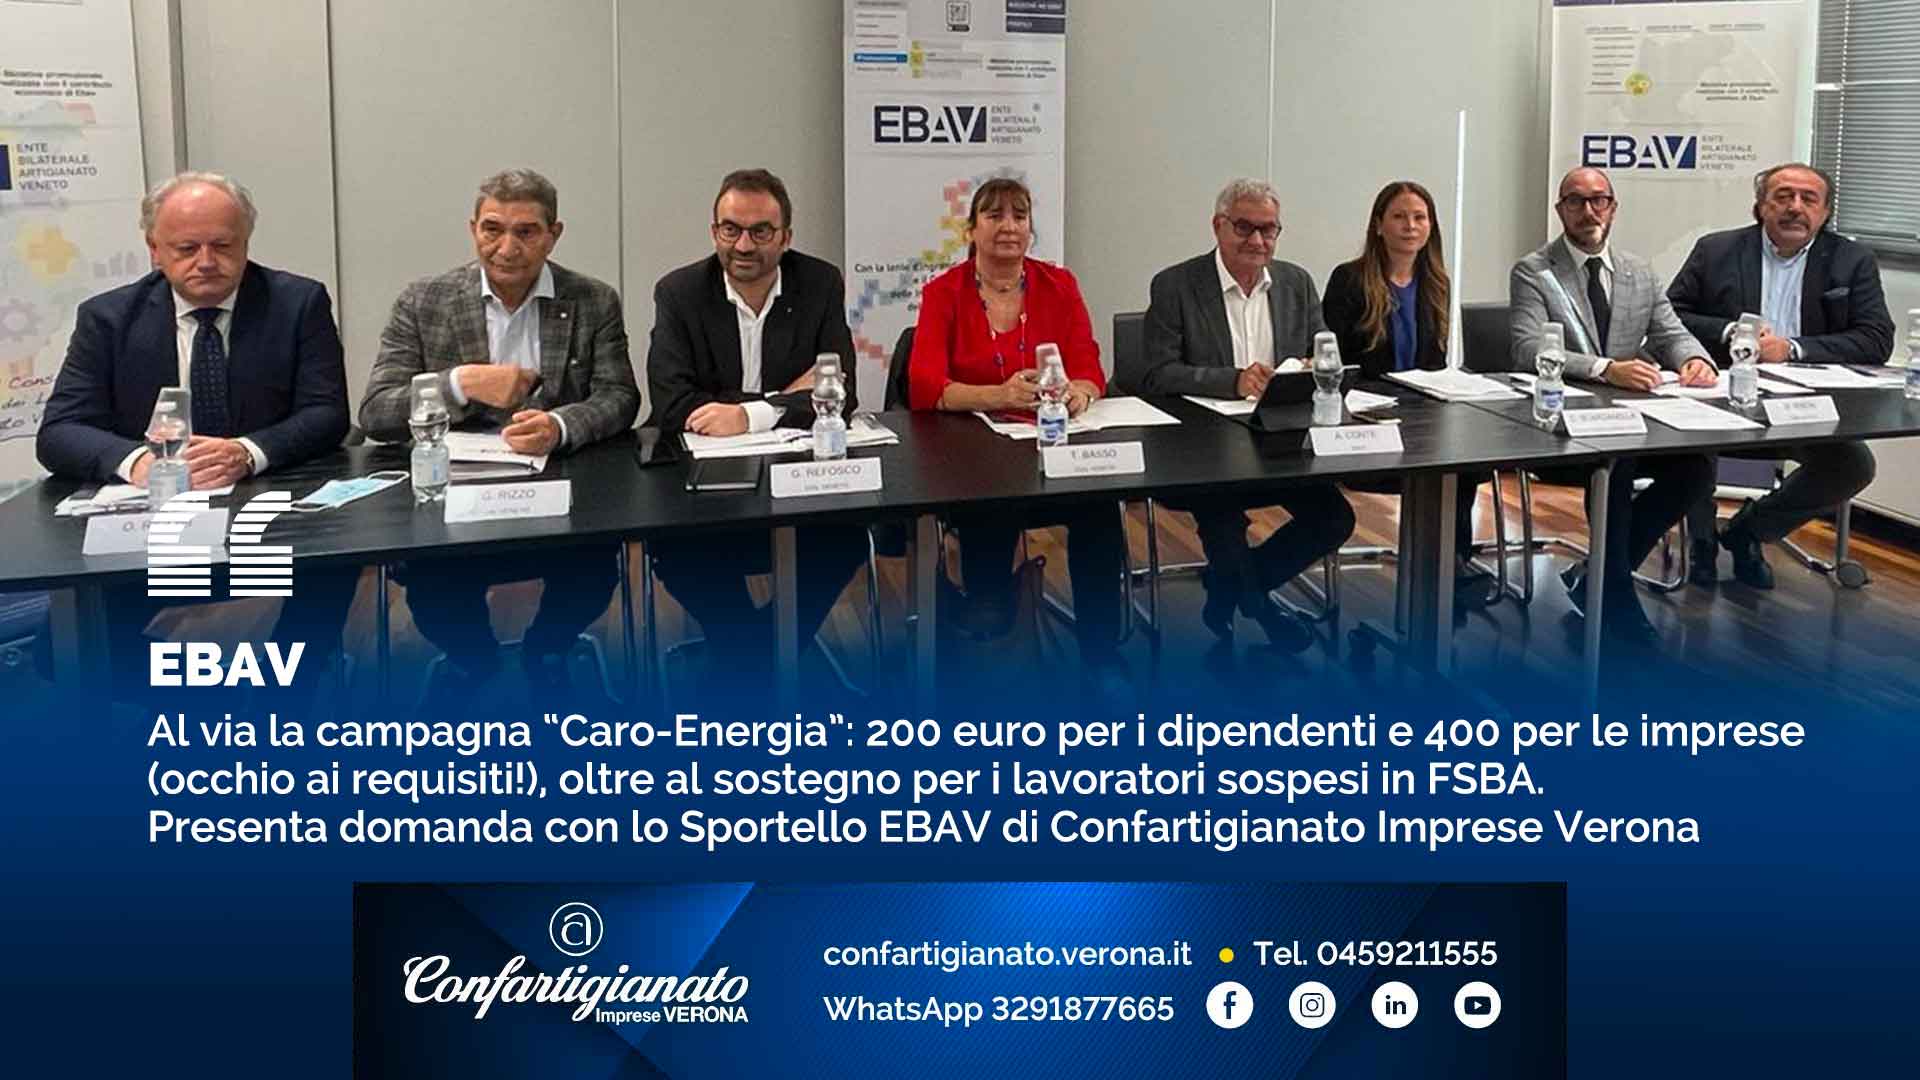 EBAV – Al via la campagna “Caro-Energia”: 200 euro per i dipendenti e 400 per le imprese (occhio ai requisiti!), oltre al sostegno per i lavoratori sospesi in FSBA. Presenta domanda con il nostro Sportello EBAV